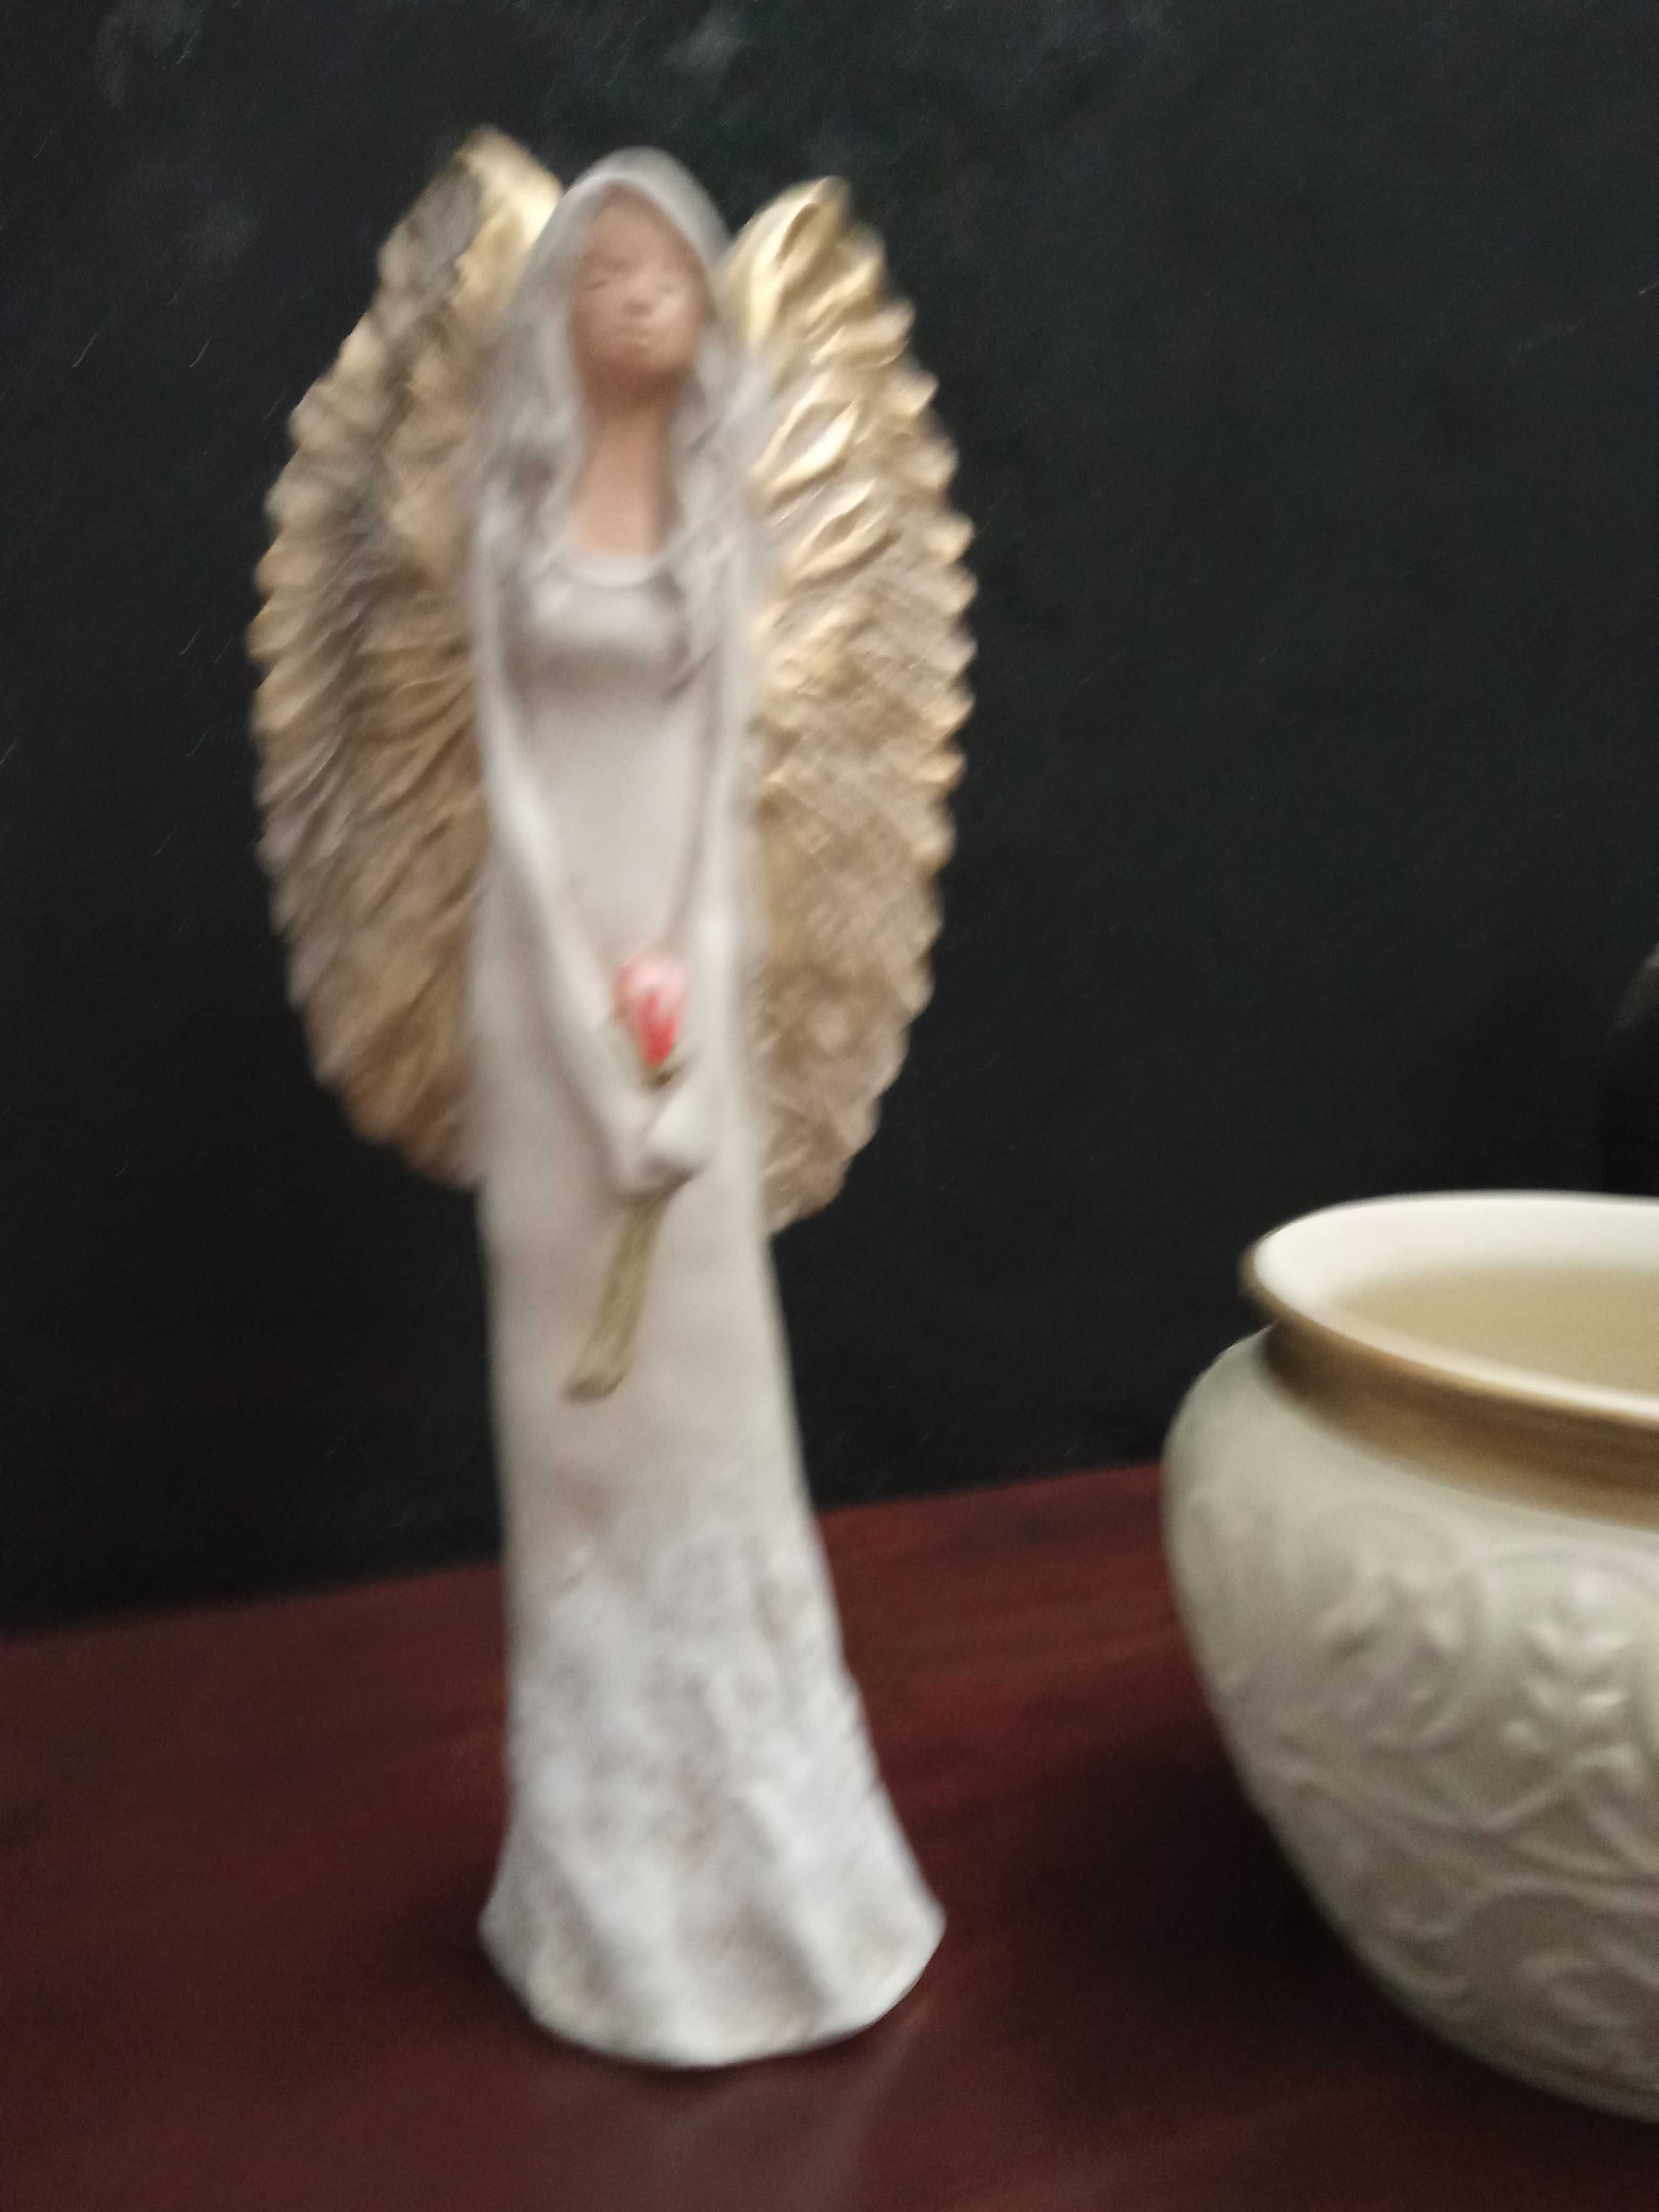 Anioł duży figurka,ozdoba dekoracja prezent